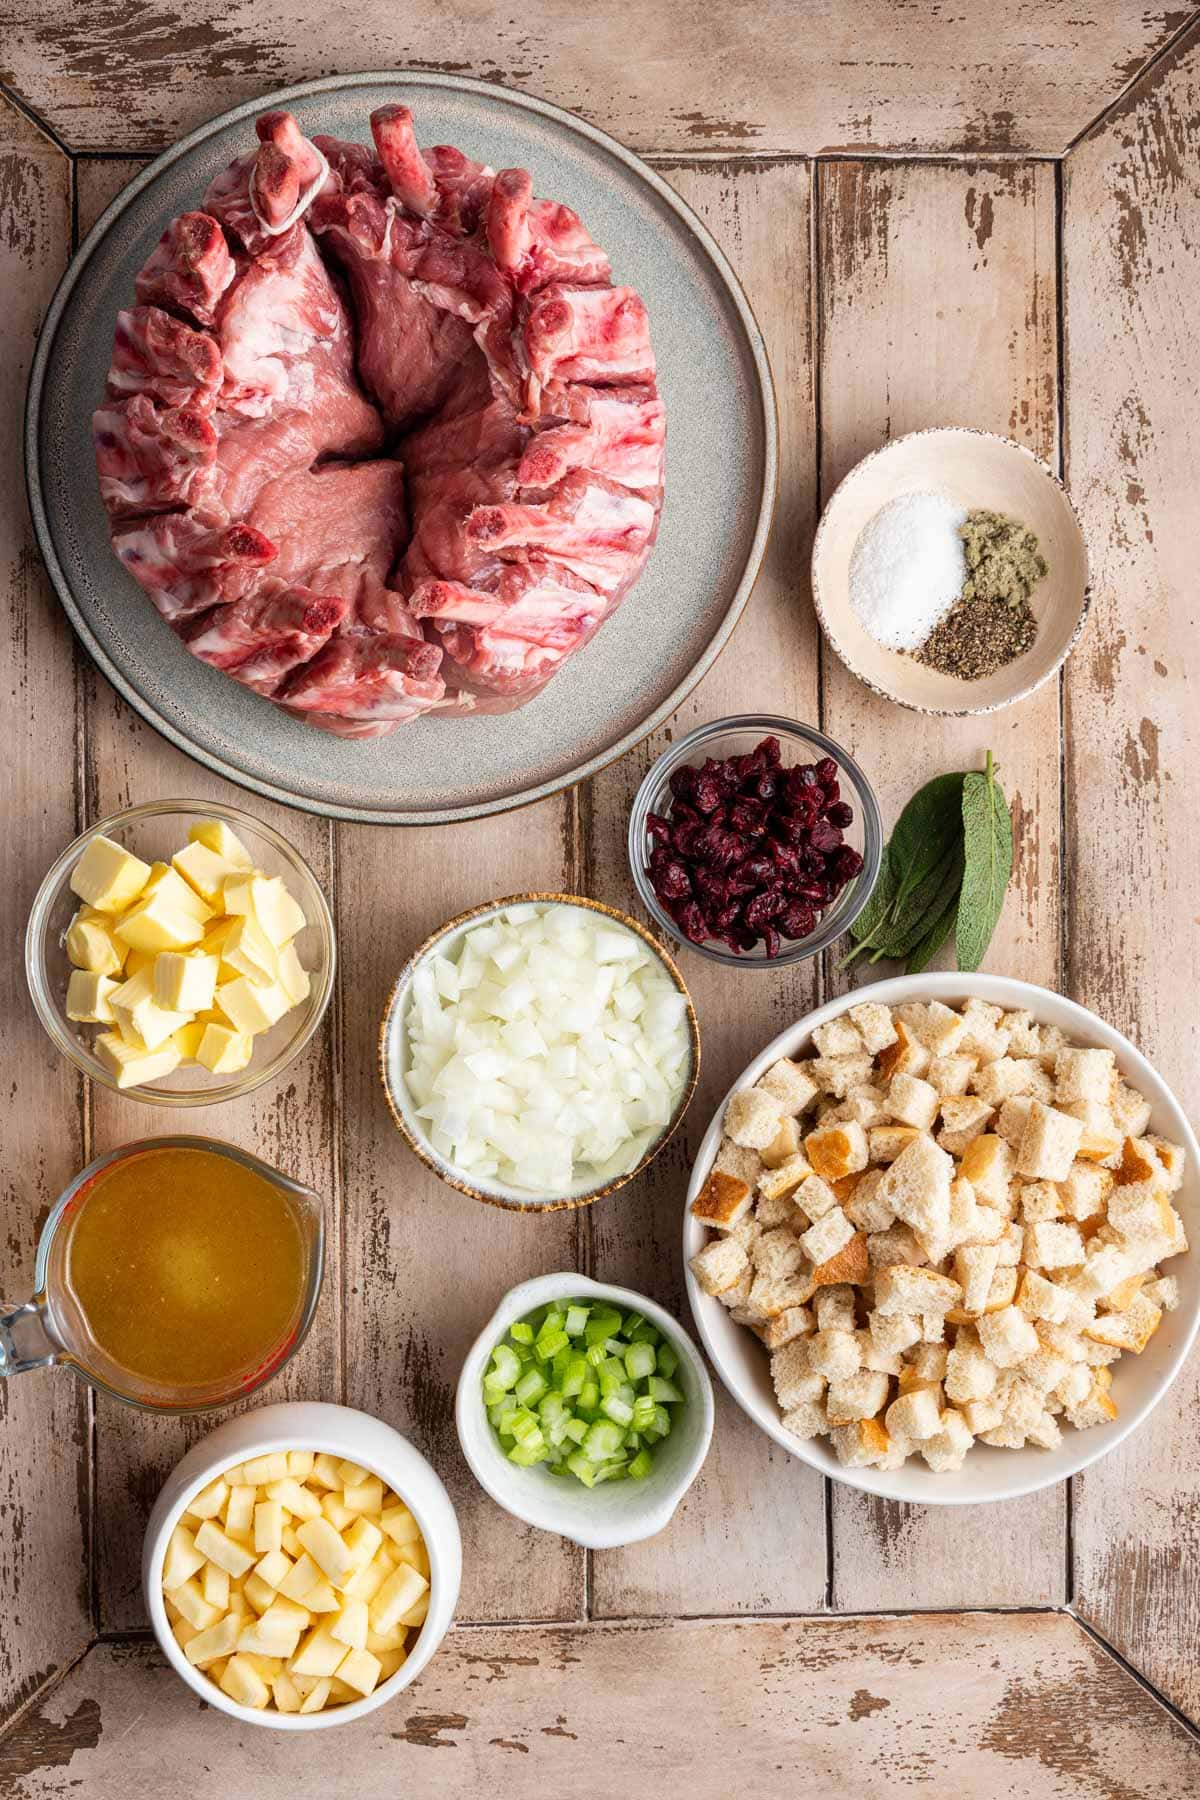 Crown Pork Roast ingredients in separate prep bowls